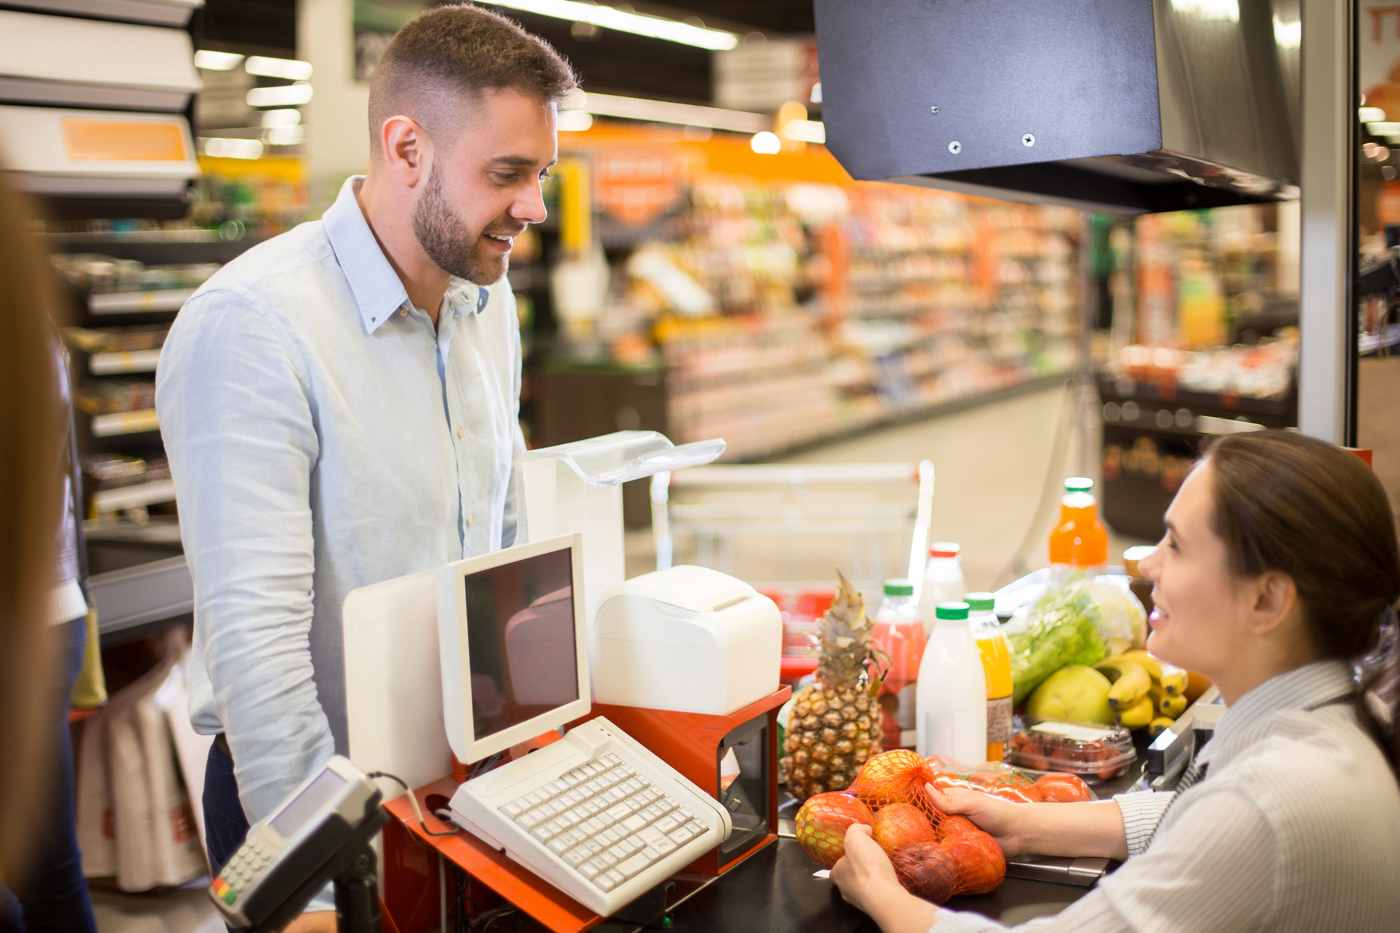 Im Supermarkt einkaufen dabei Geld sparen Überblick über die Kosten behalten und bar zahlen